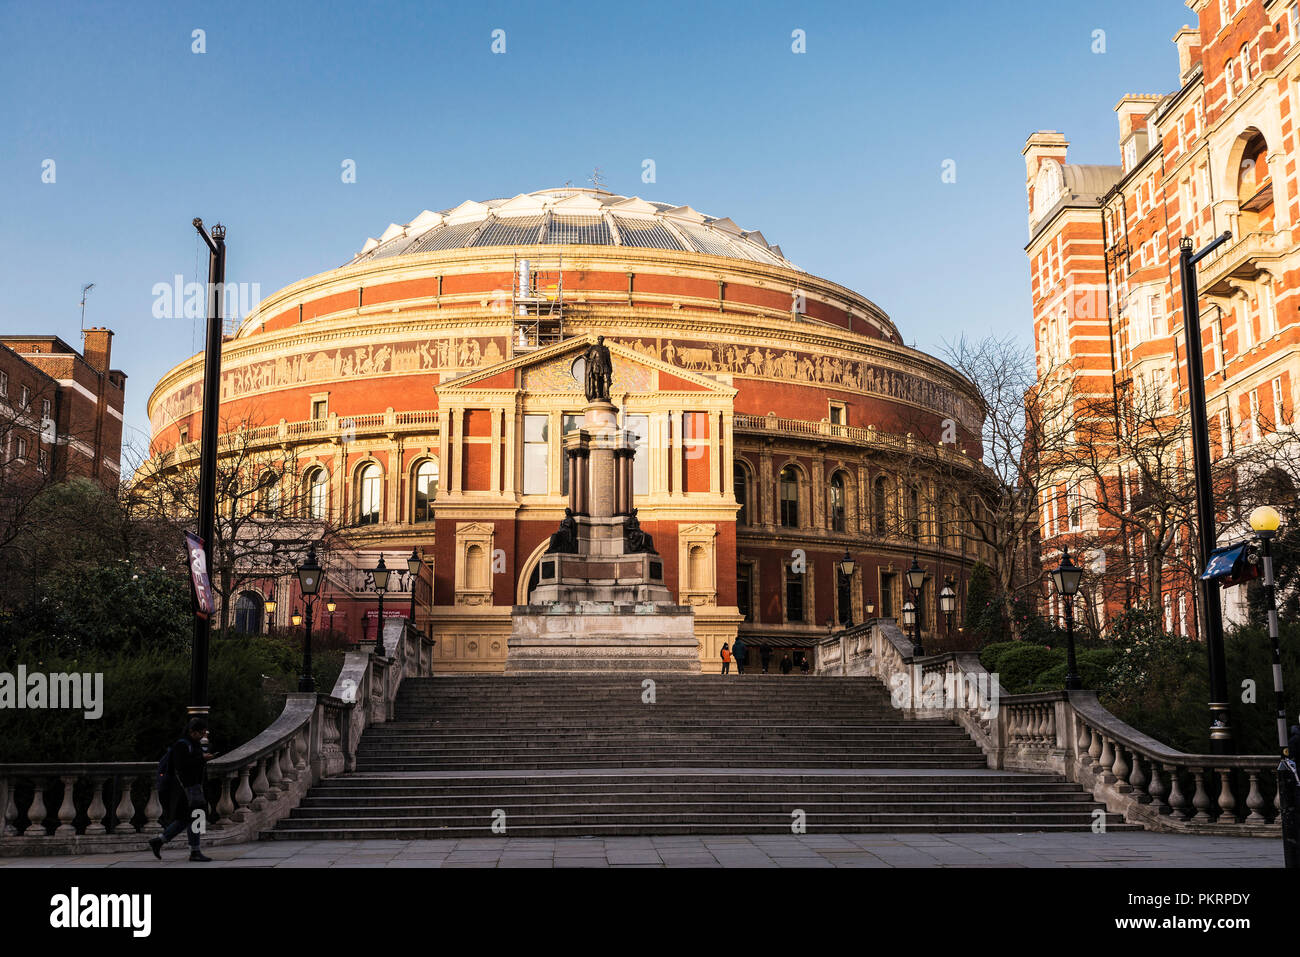 Londres, Reino Unido - 3 de enero de 2018: Fachada del Royal Albert Hall, un antiguo edificio clásico con personas alrededor de Londres, Inglaterra, Reino Unido Foto de stock